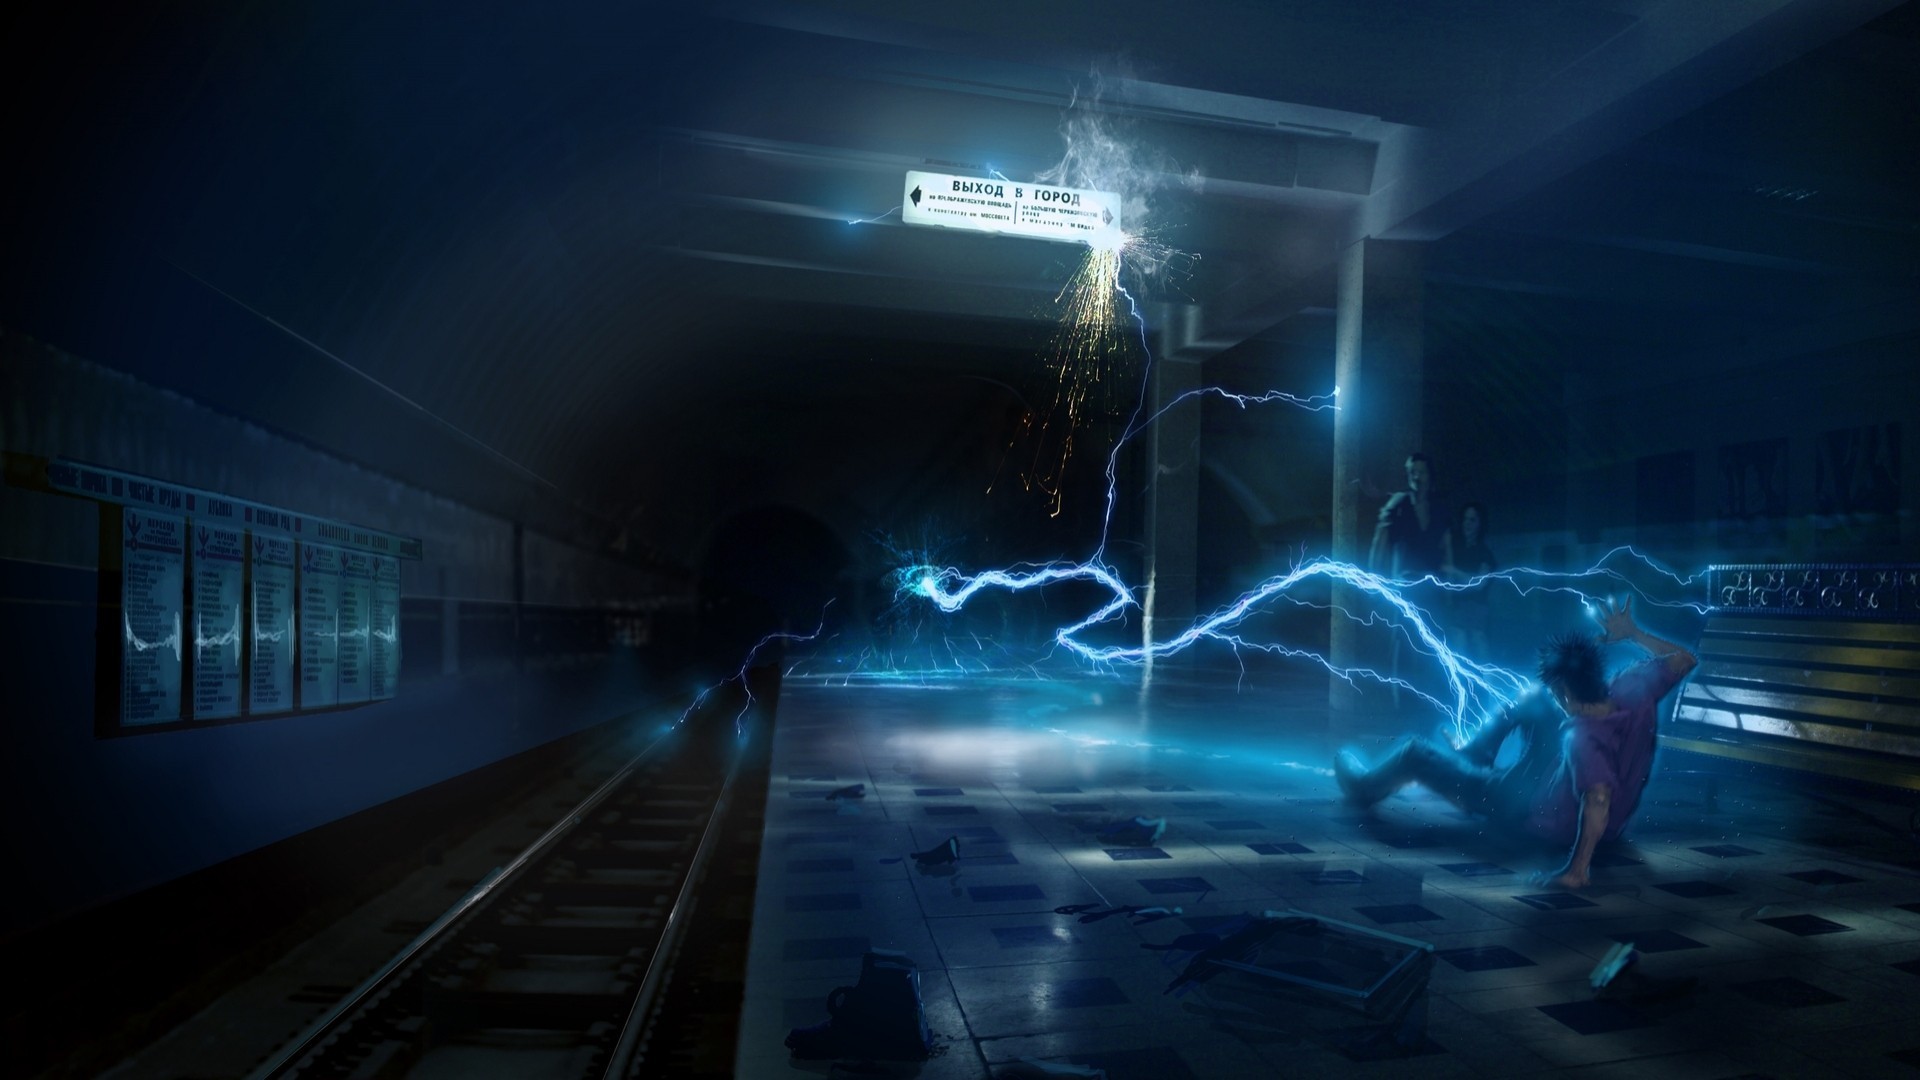 Artwork Electricity Concept Art Subway Digital Art Cyan Blue 1920x1080